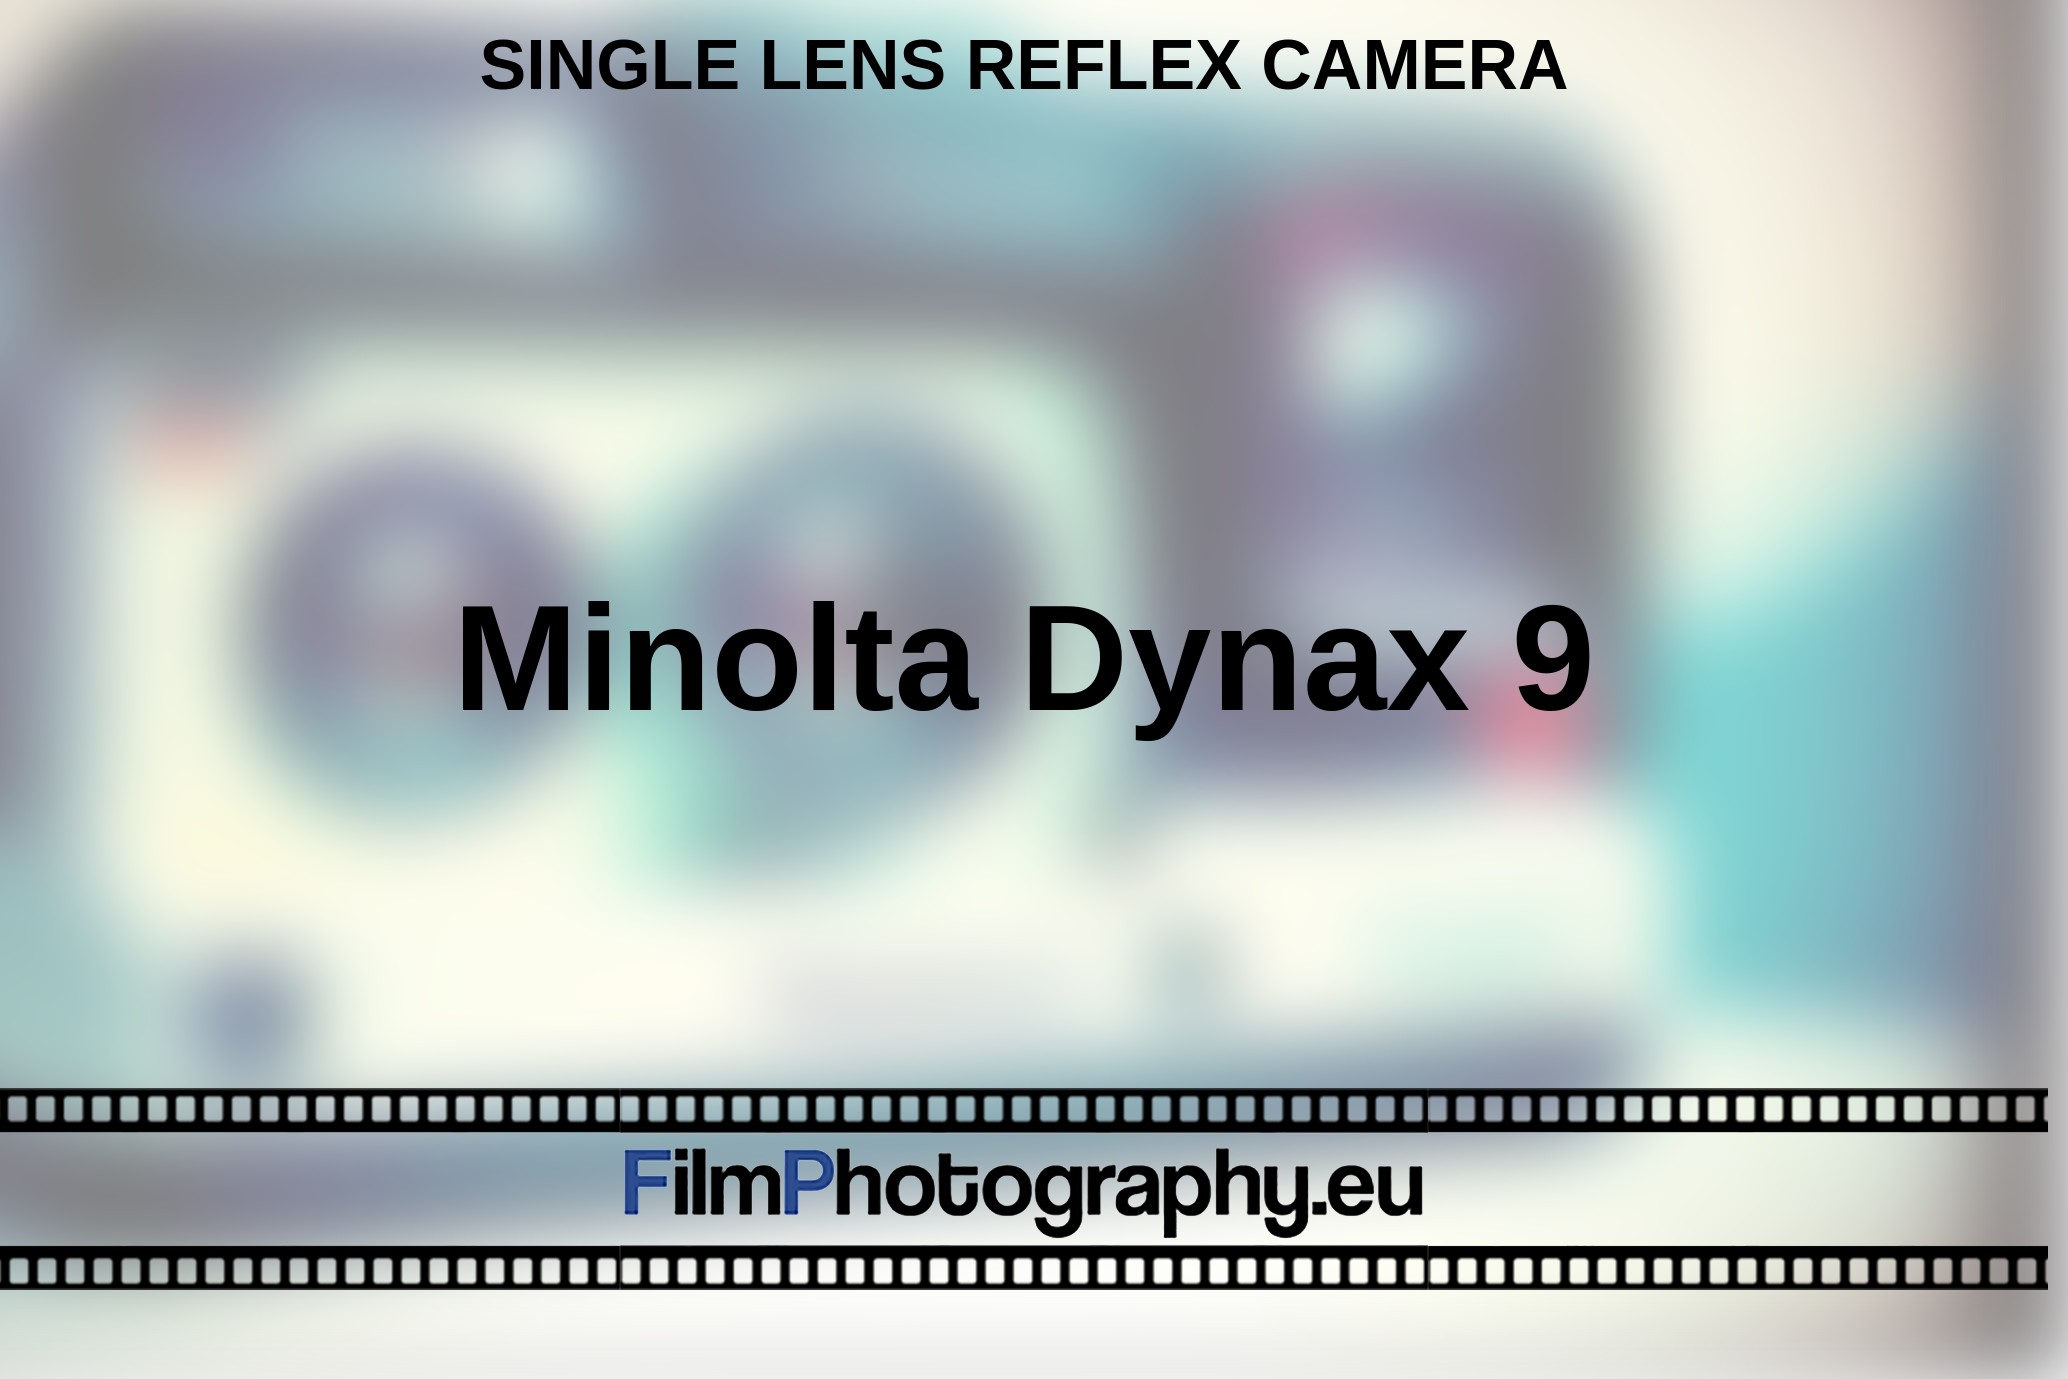 Minolta-Dynax-9-single-lens-reflex-camera-bnv.jpg